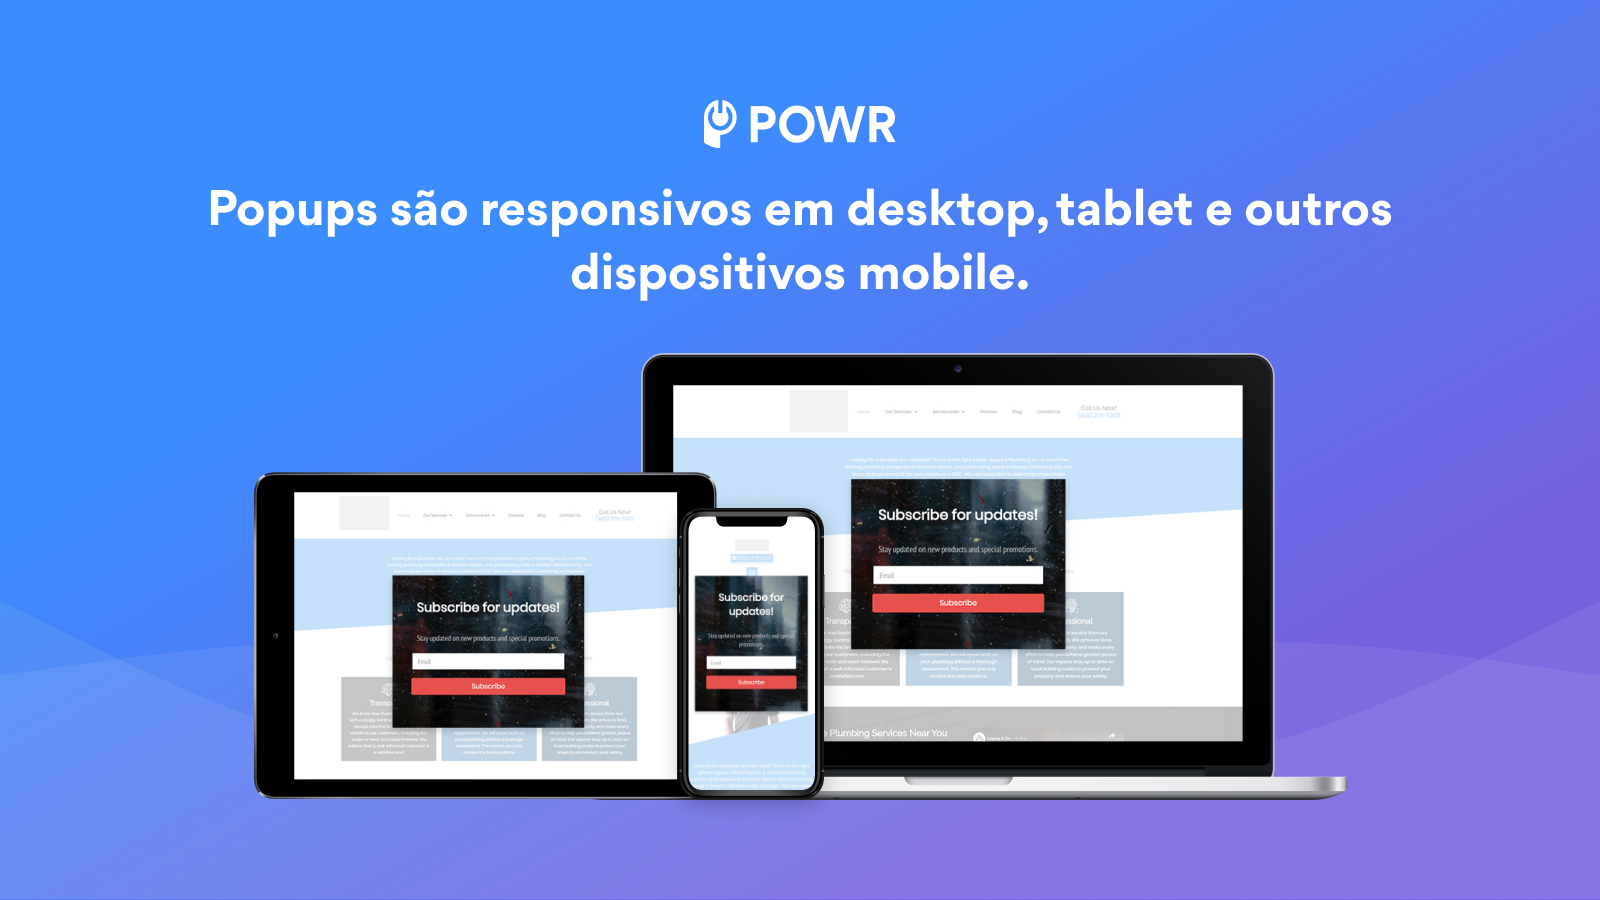 Popups são responsivos em desktop, tablet e outros dispositivos